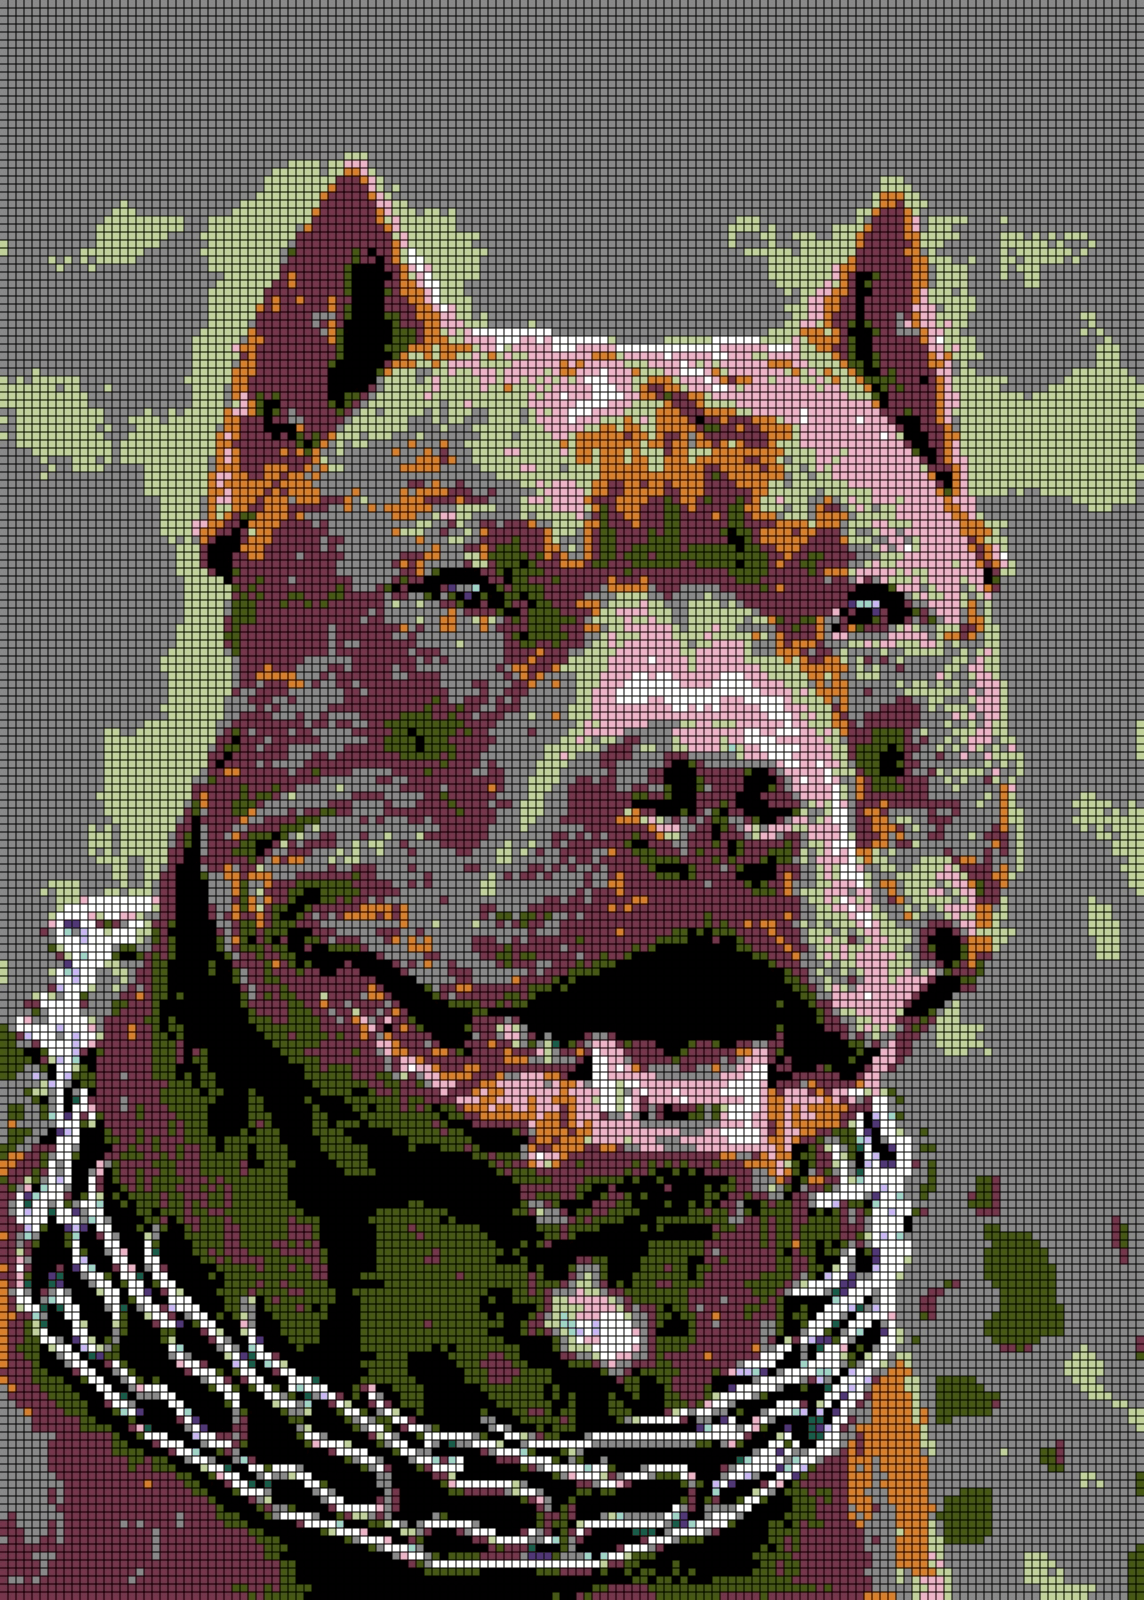 American Pitbull Terrier / Dangerous Dog Breeds